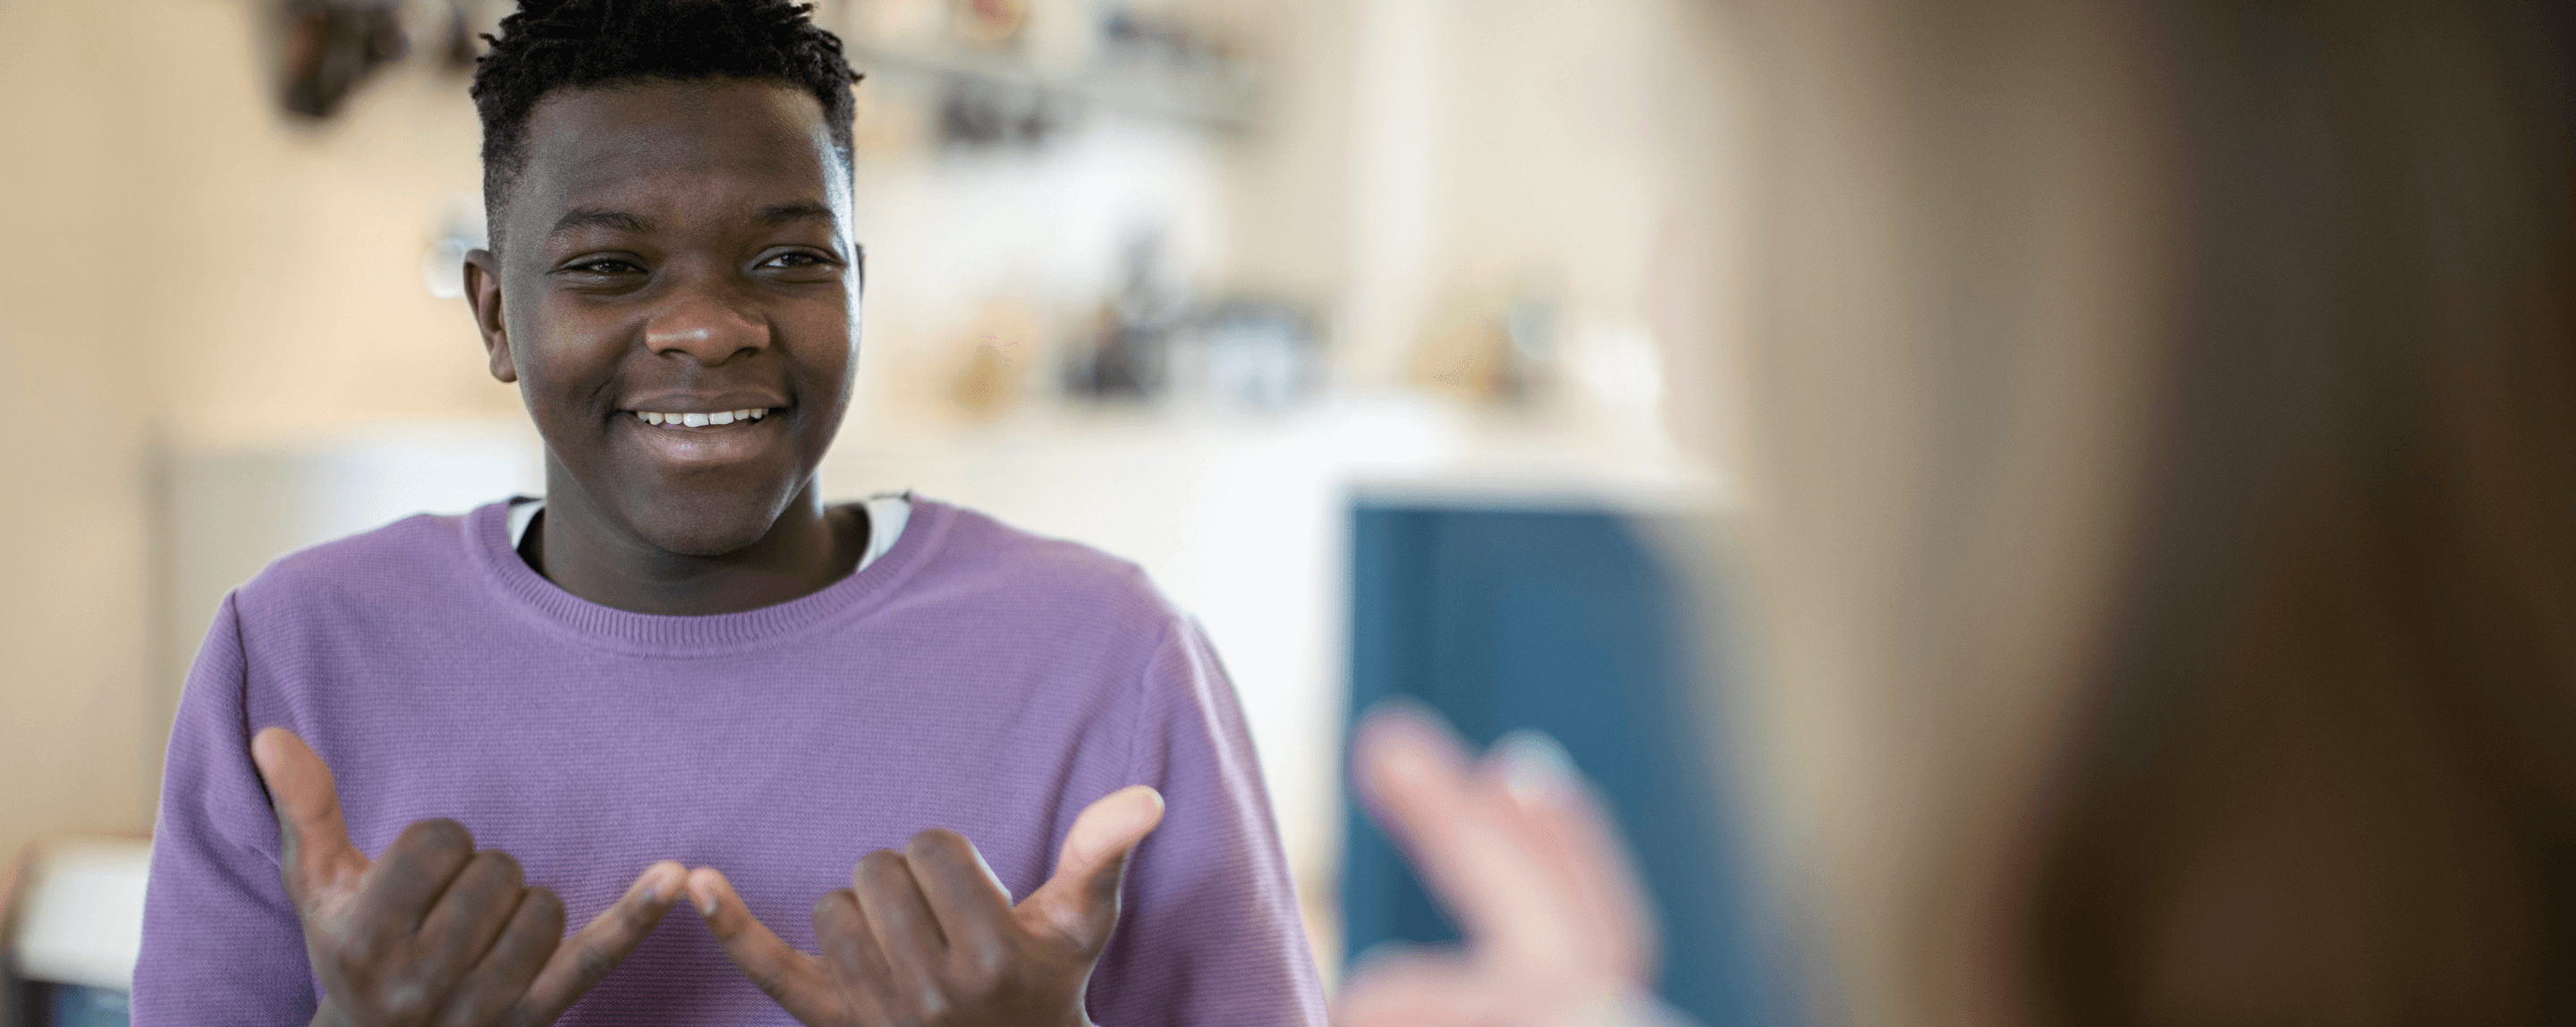 Jeune homme noir communiquant en utilisant le langage des signes. Il sourit. Il se trouve à gauche de l'écran et porte un haut violet.